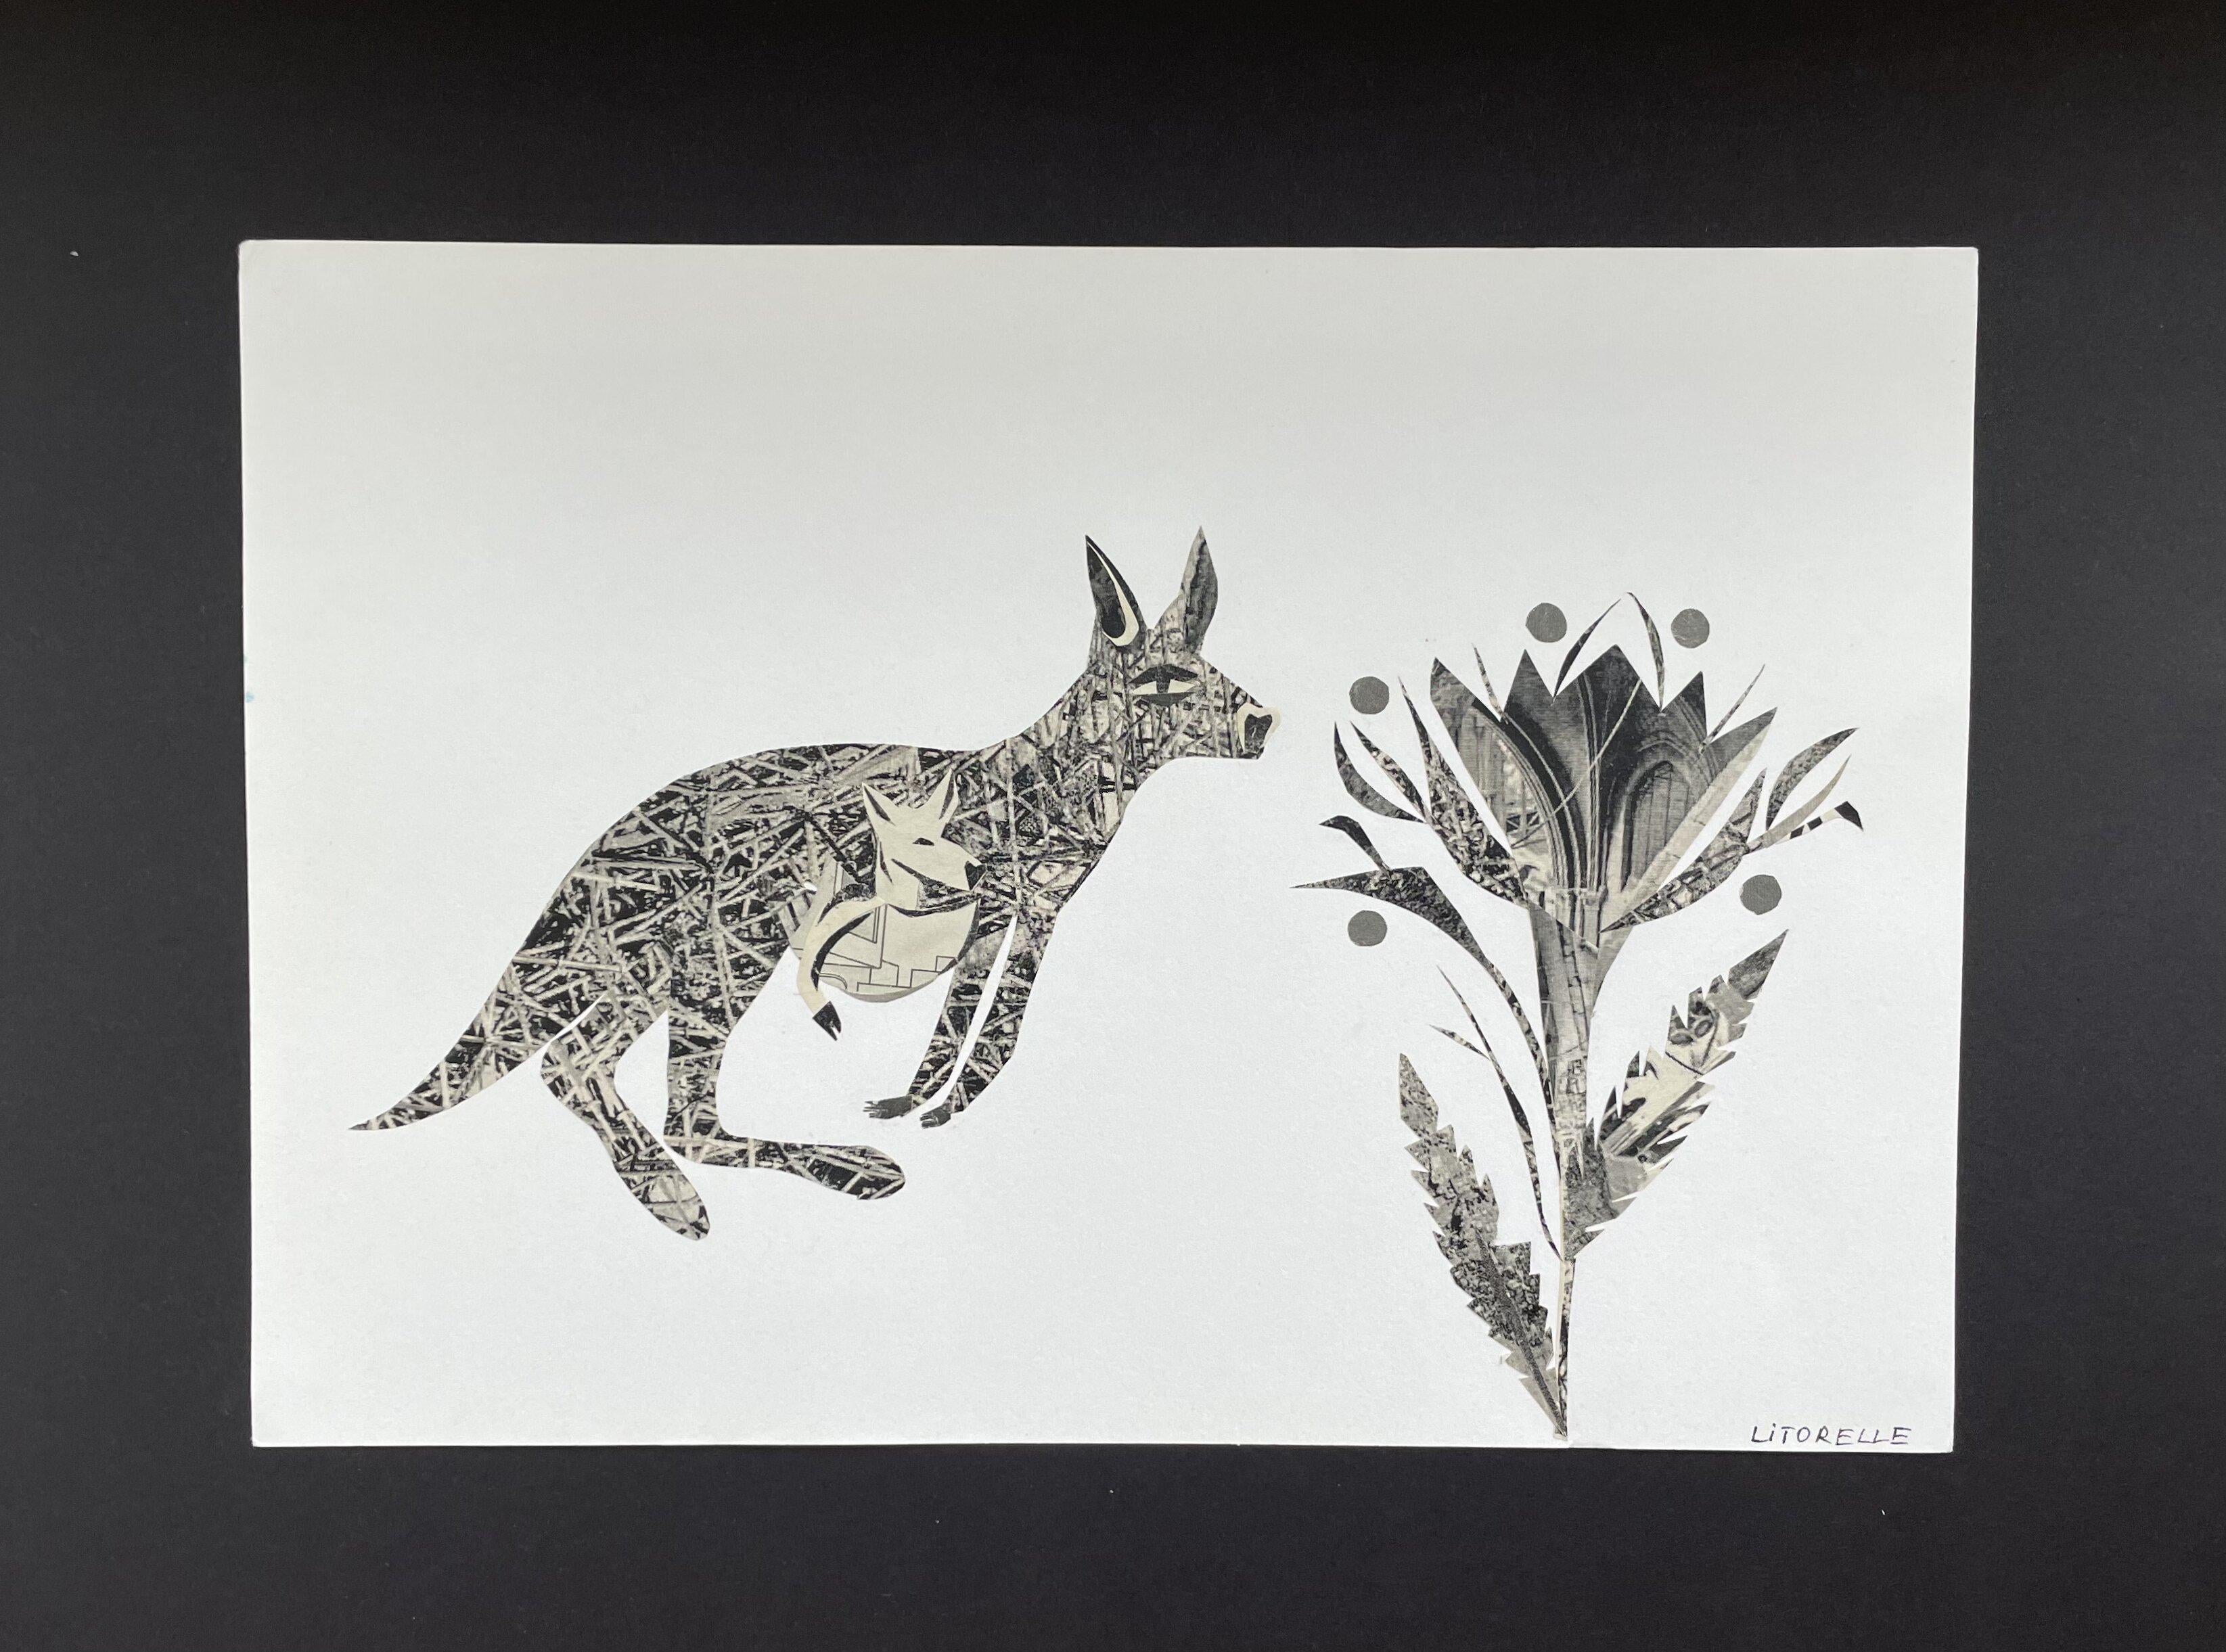 Kangaroo - Mixed Media Art by Hélène Litorelle